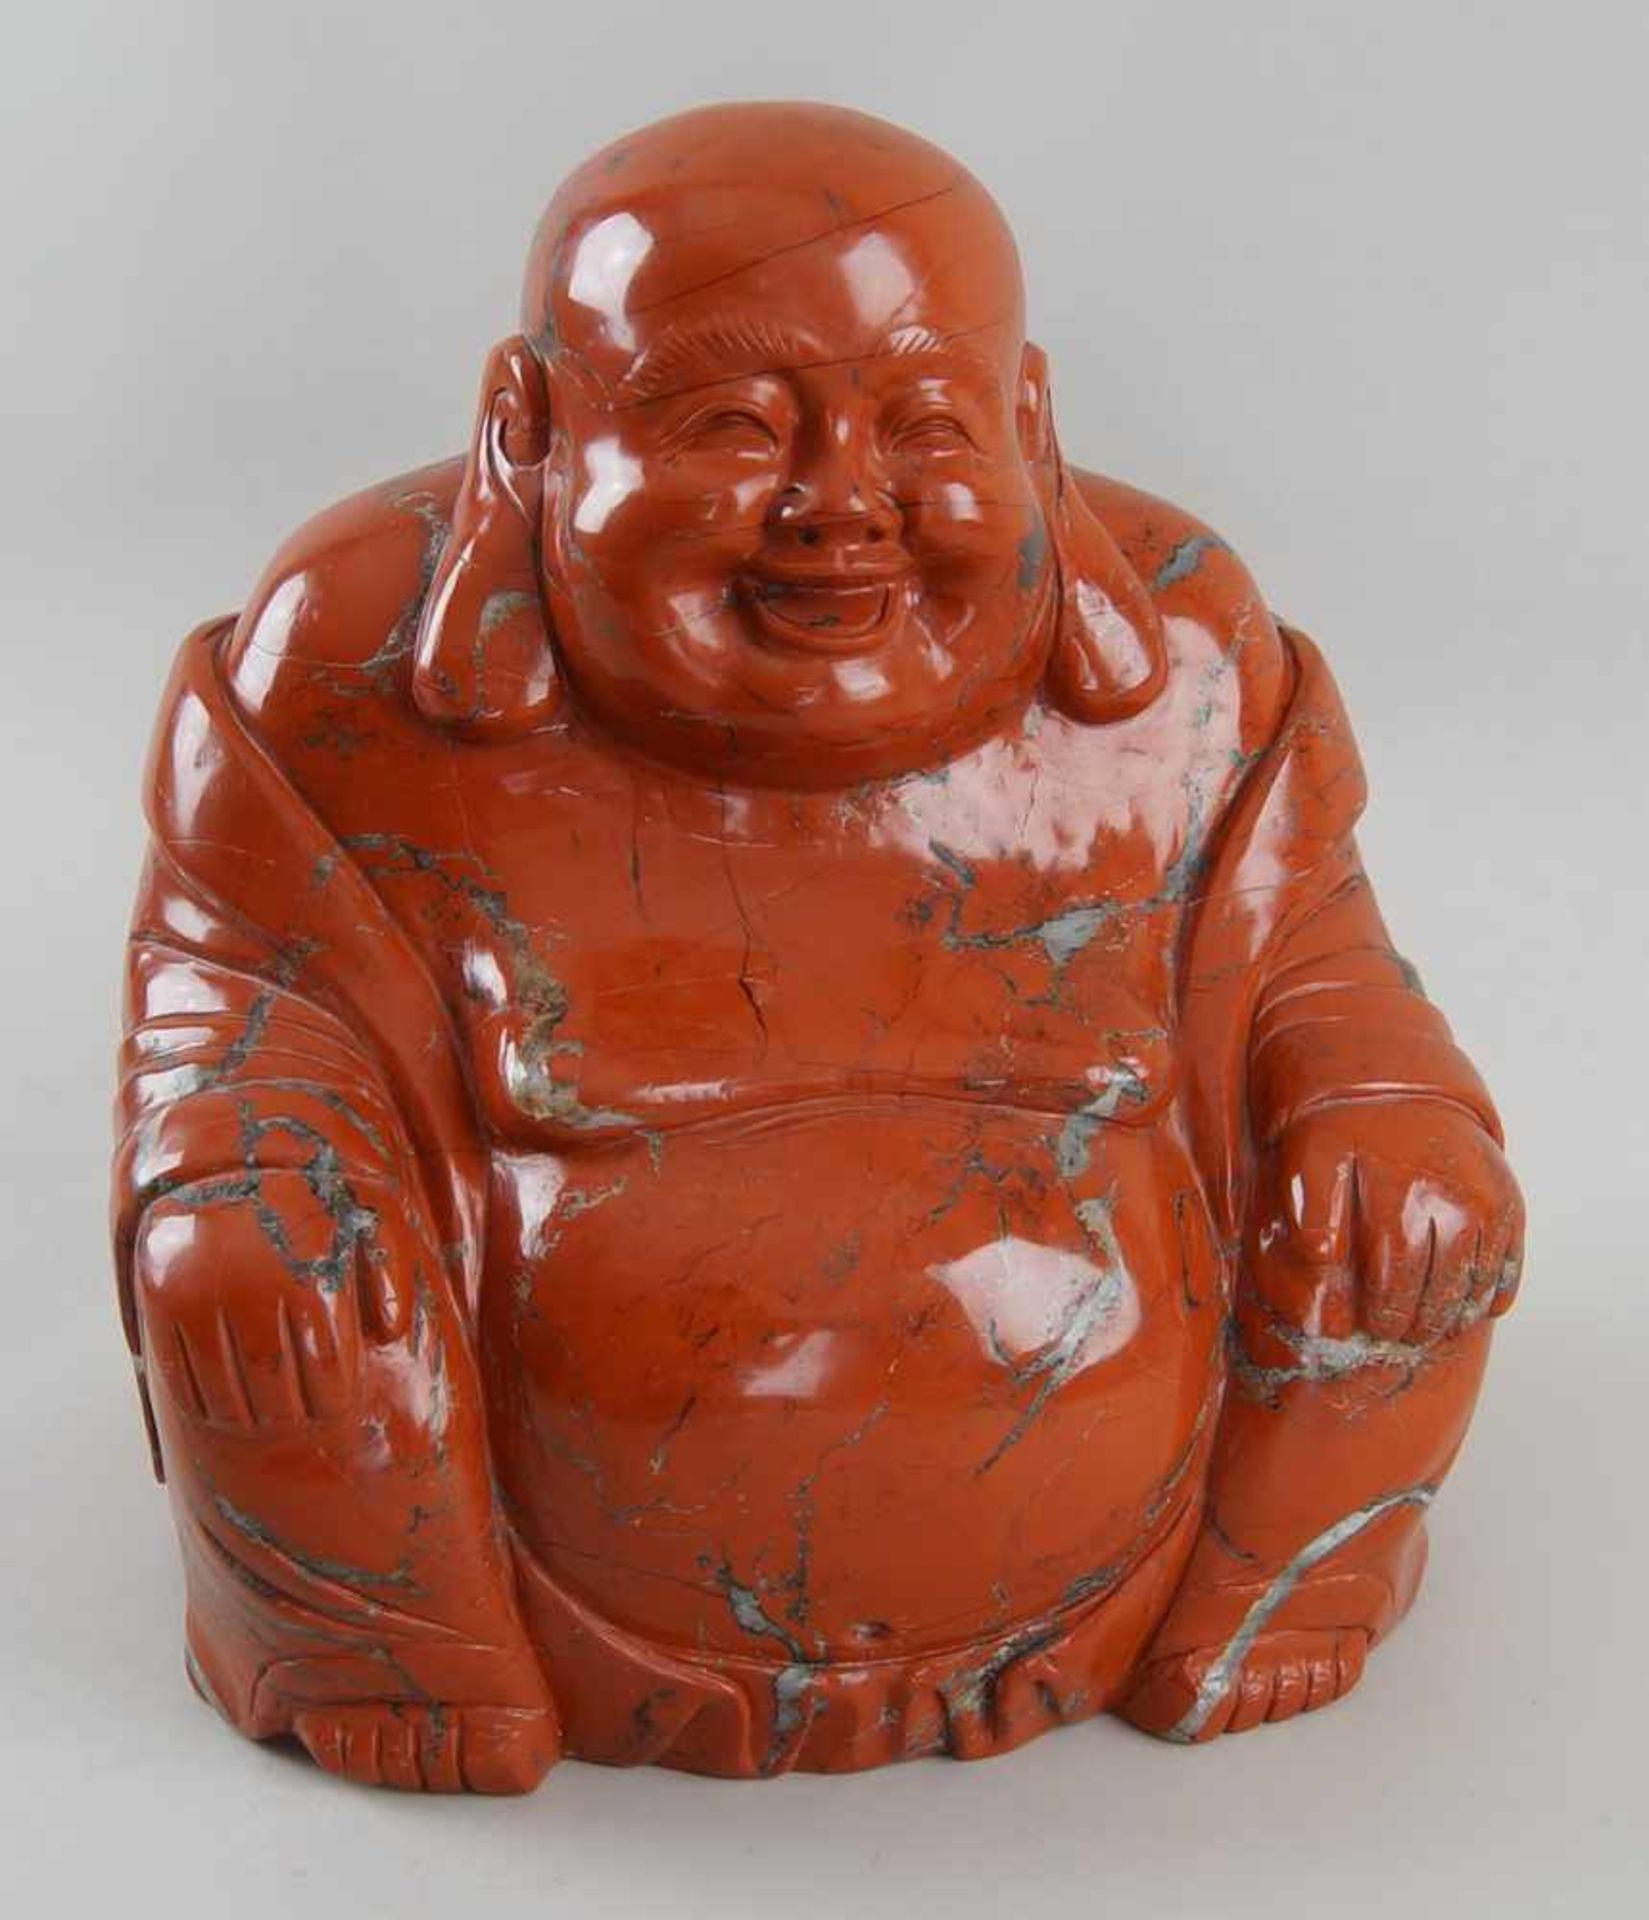 Sitzender Buddha aus Rodonit, H 30 cm- - -24.00 % buyer's premium on the hammer price19.00 % VAT